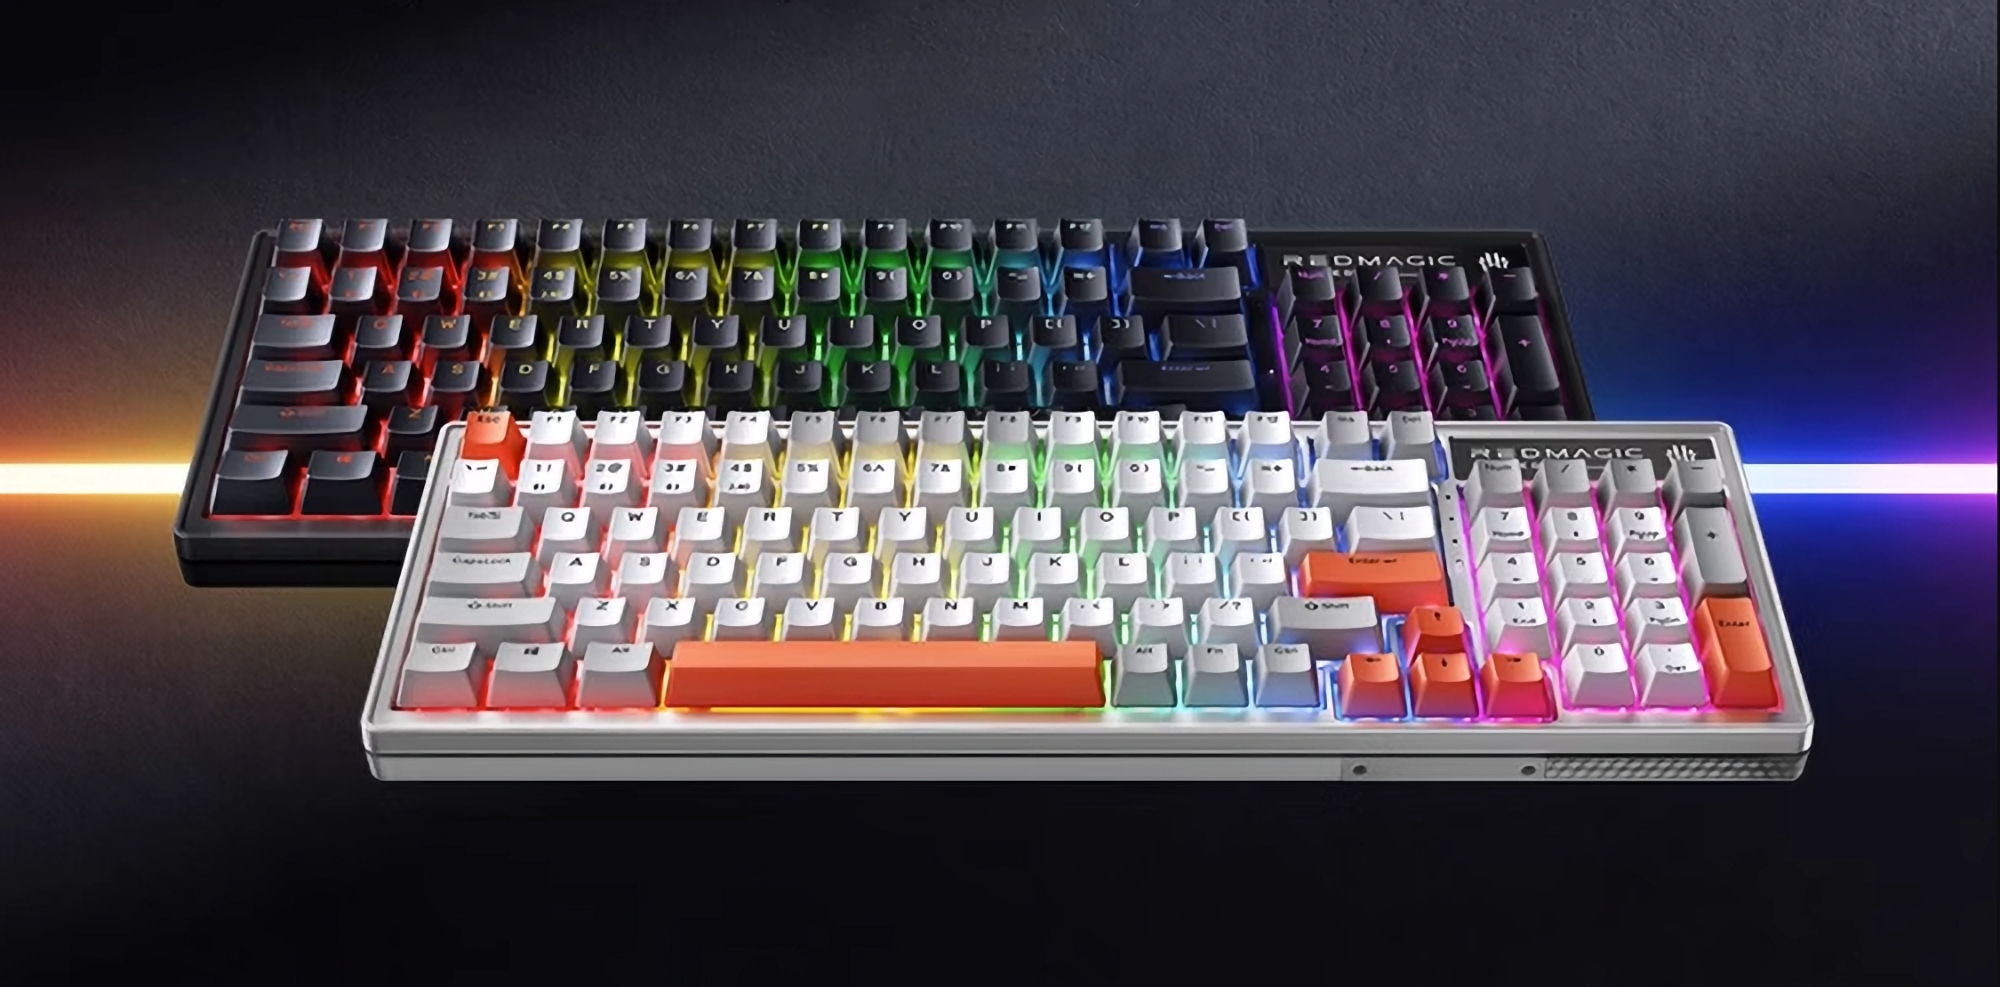 nubia stellt Red Magic E-Sports Mechanical Keyboard mit abnehmbaren Tasten, RGB-Hintergrundbeleuchtung und 1ms Reaktionszeit vor